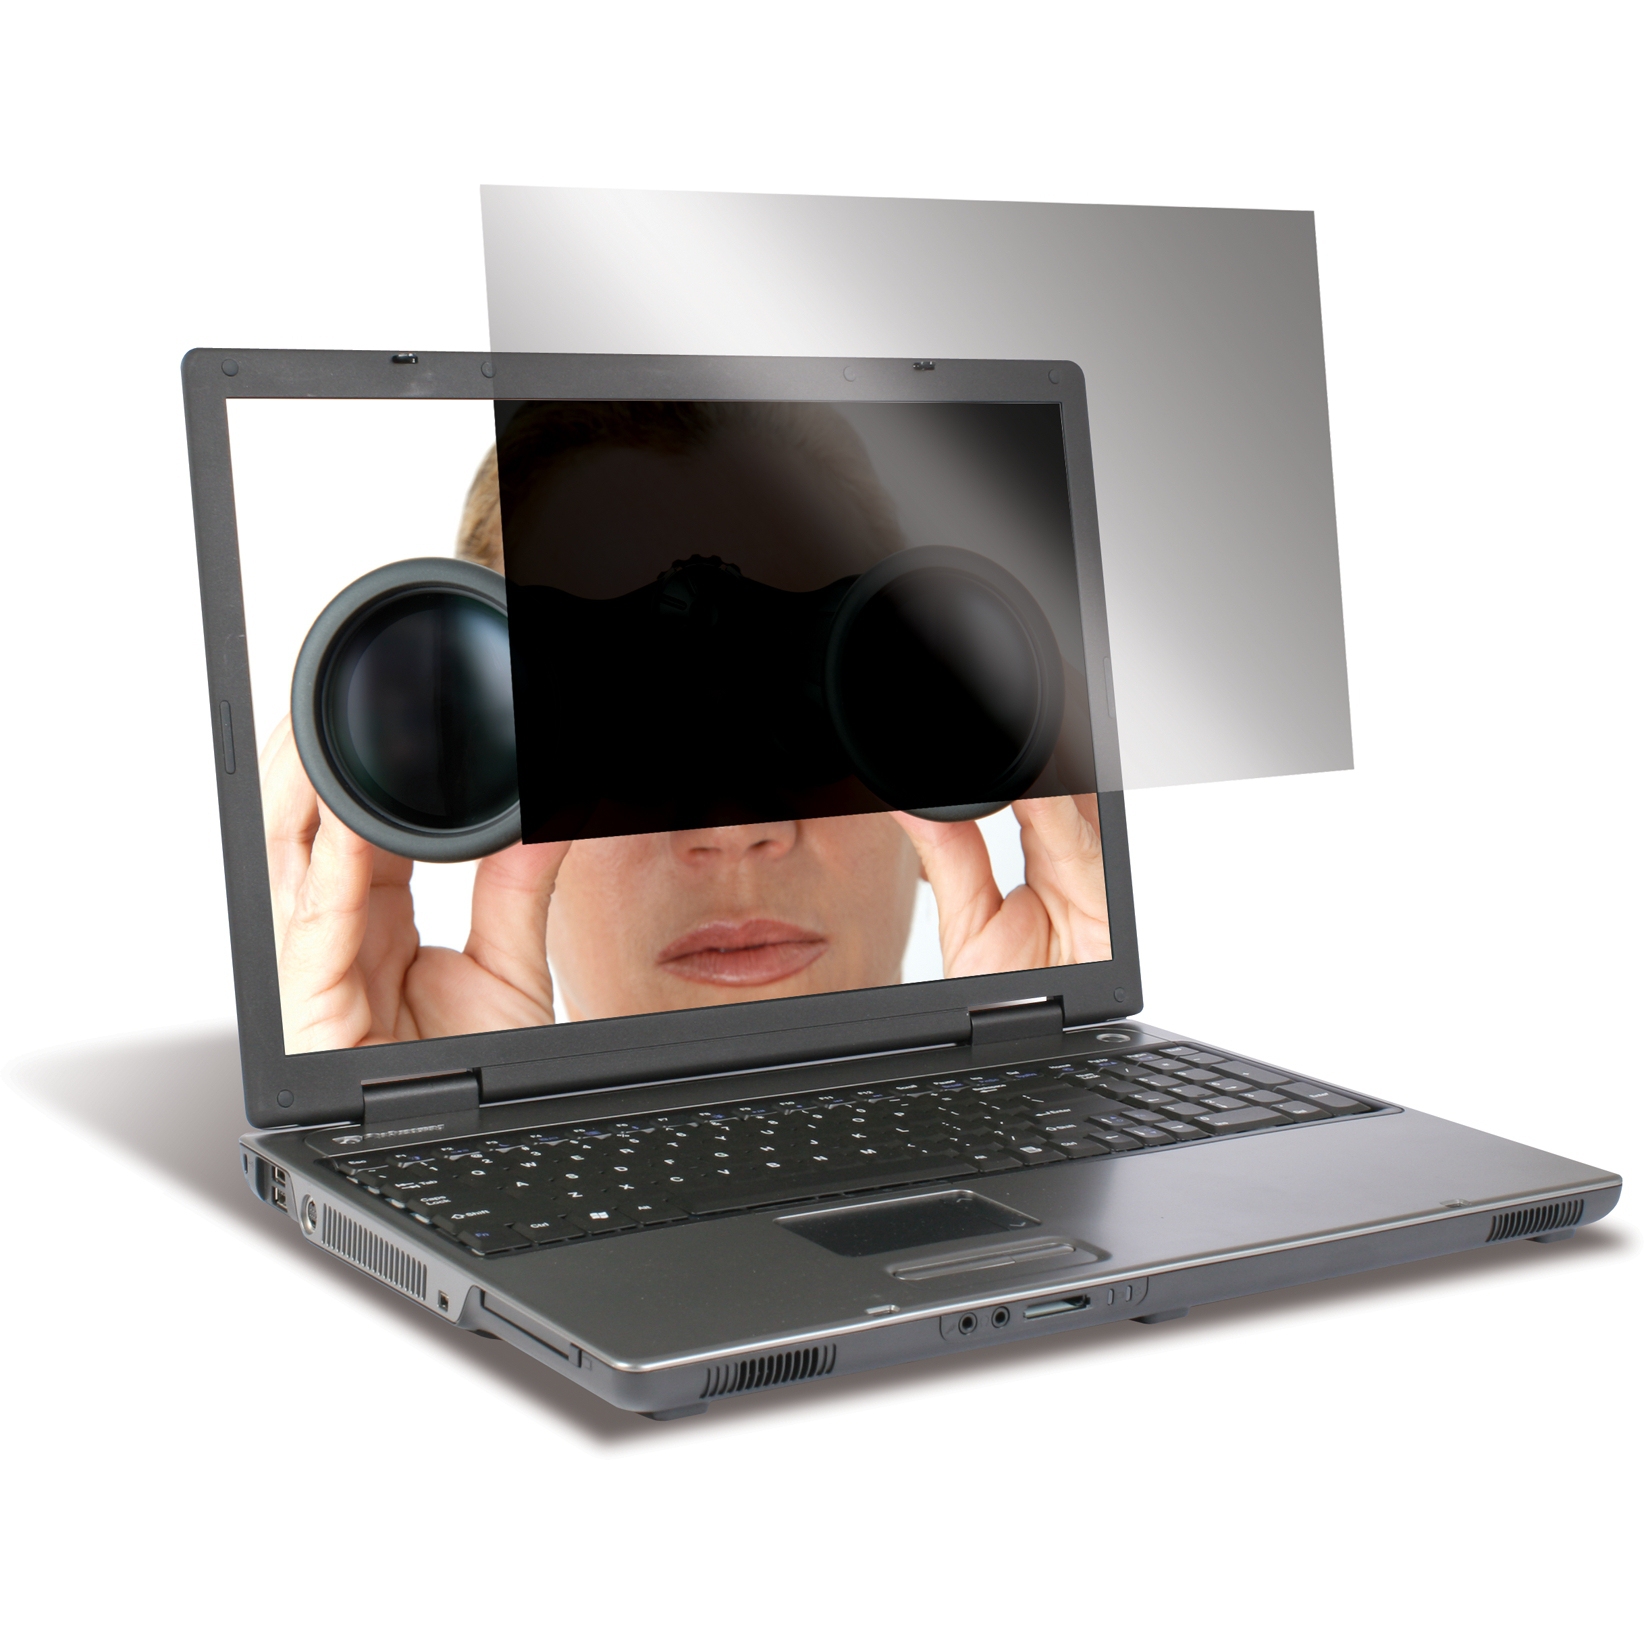 Filtro De Privacidad 4Vu Targus P/Laptop Widescreen 14.1''